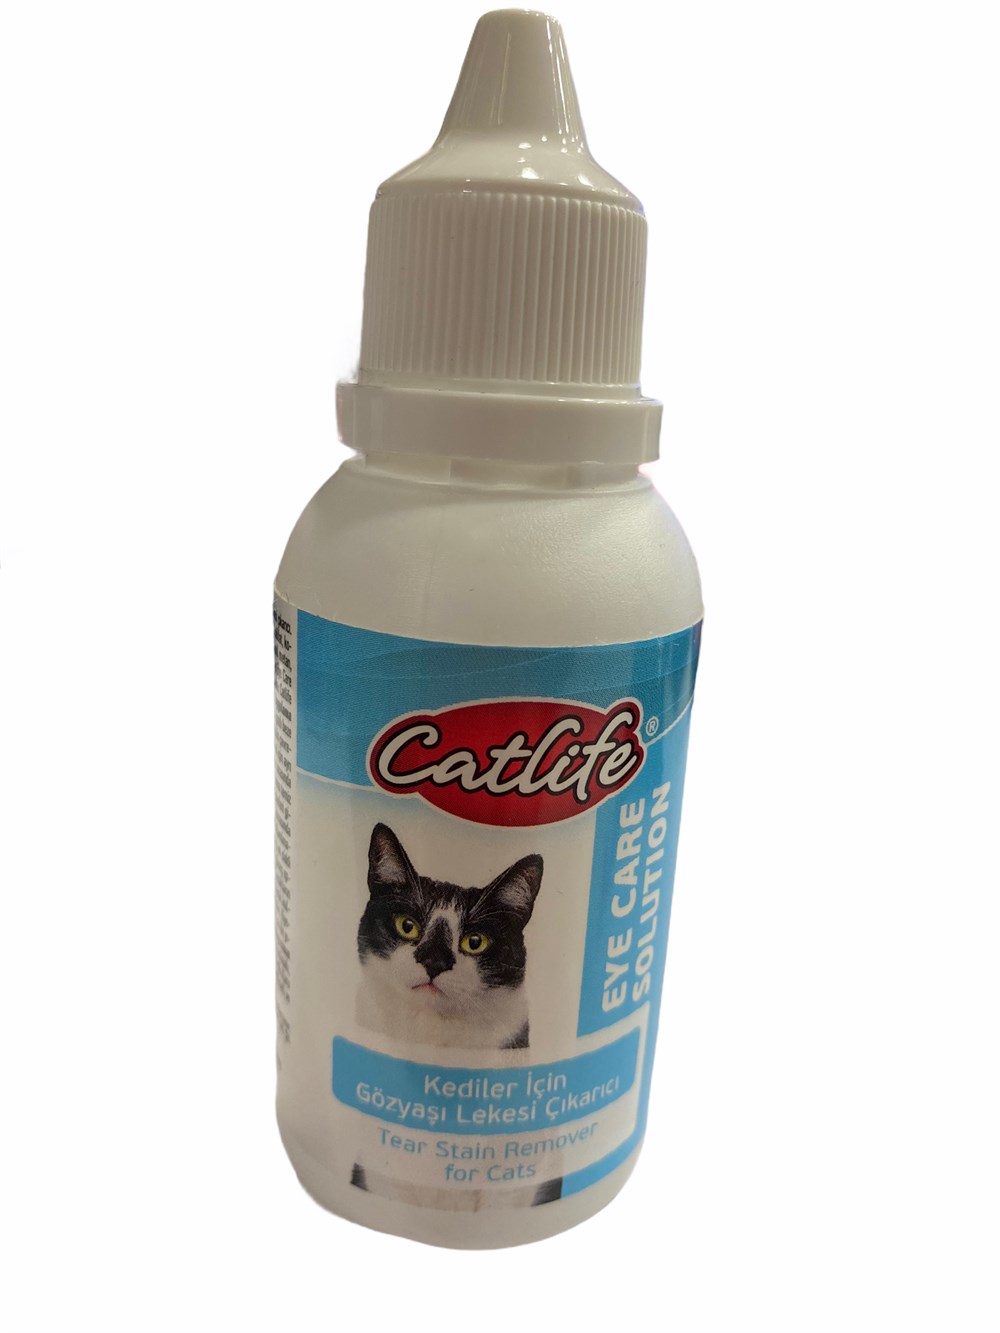 Kedi Gözyaşı Lekesi Temizleme Losyonu 50 ml | Hepsipatili.com